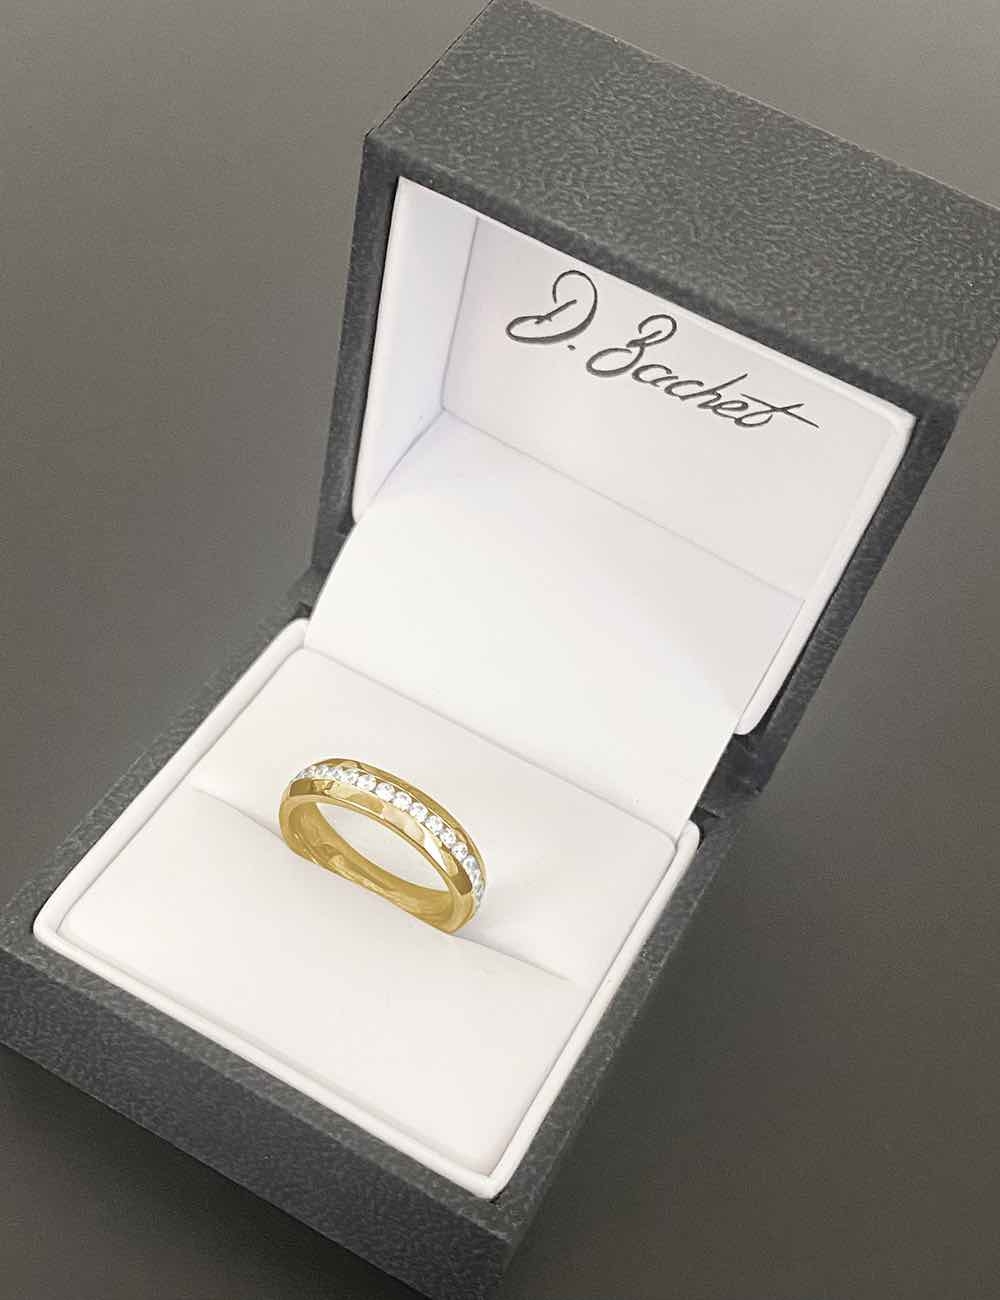 Une alliance mariage femme réalisée à la main dans nos ateliers en or jaune et diamants blancs.